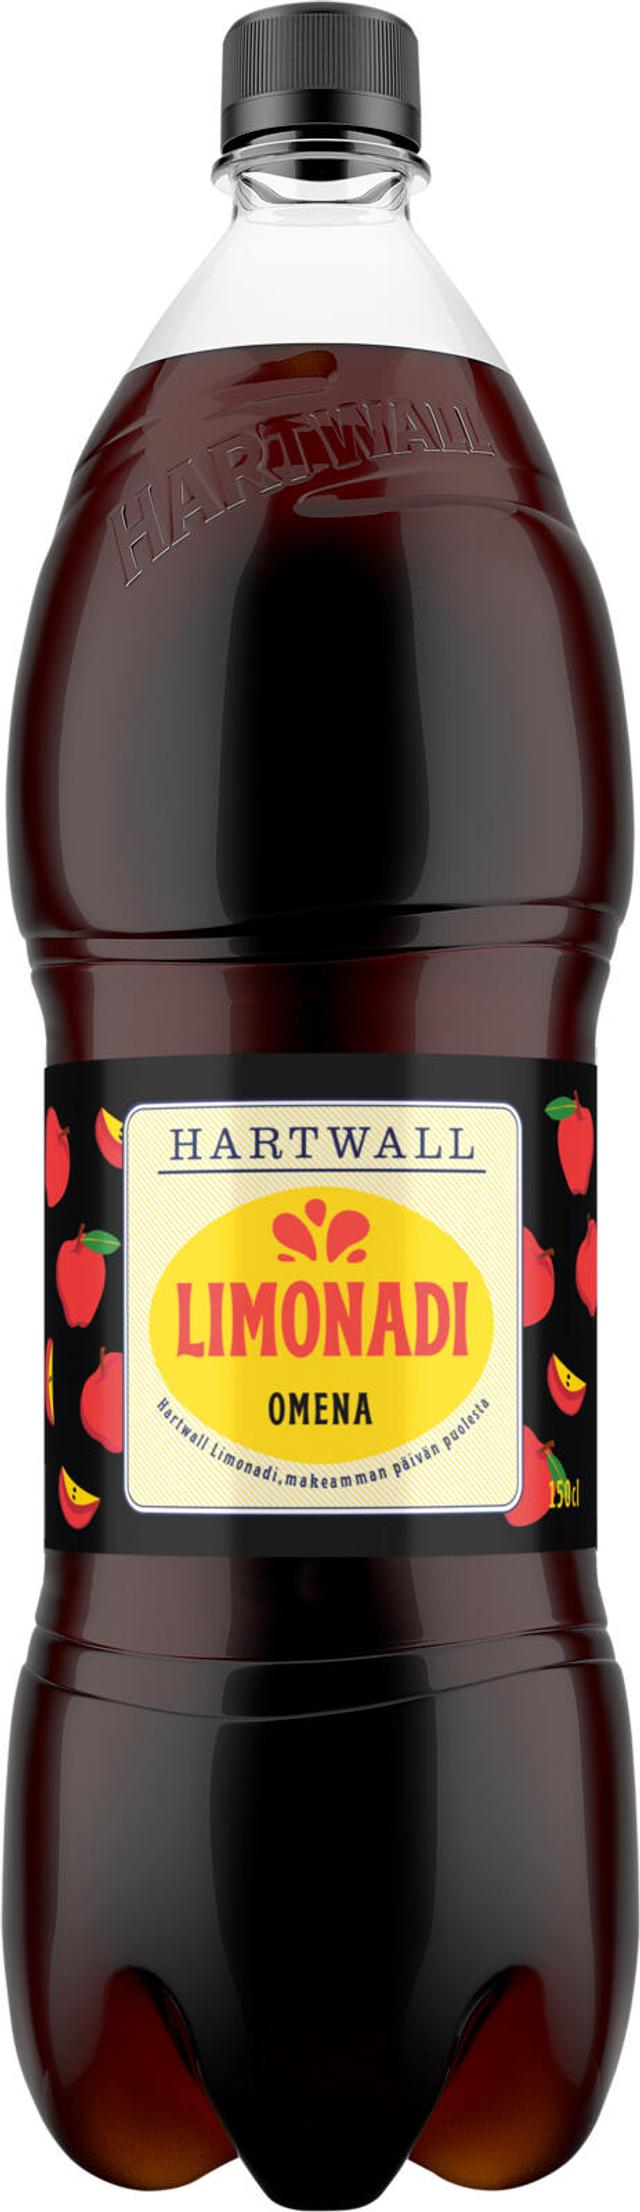 Hartwall Limonadi Omena virvoitusjuoma 1,5 l